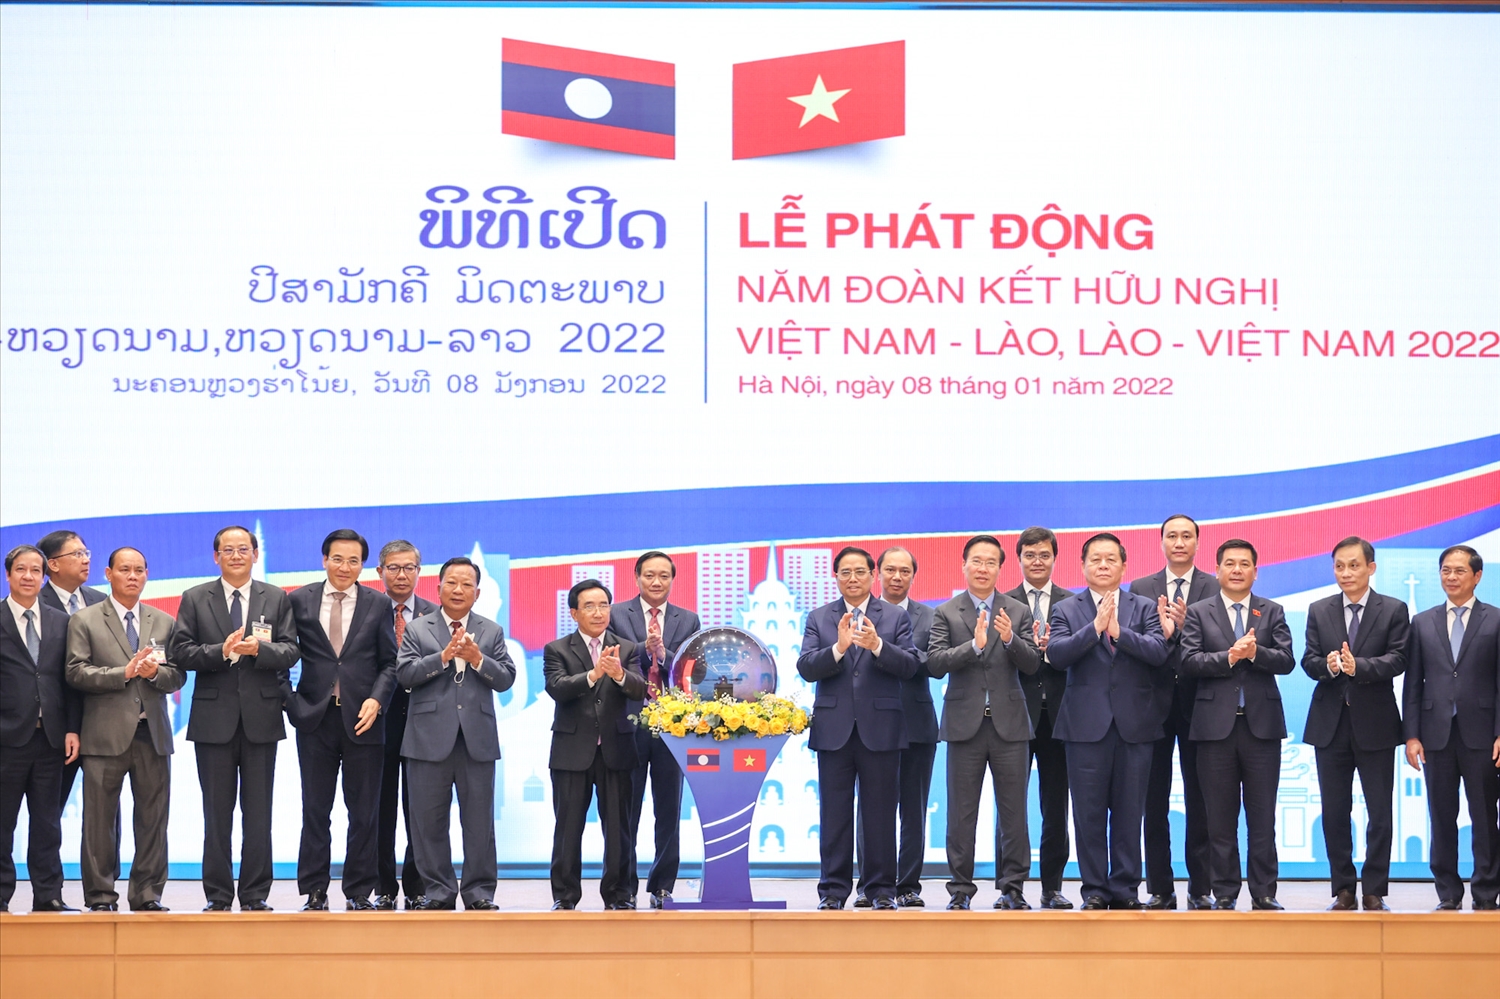 Năm 2022 là một năm quan trọng có ý nghĩa lịch sử đối với Đảng, Nhà nước và Nhân dân hai nước Lào - Việt Nam anh em; kỷ niệm 60 năm Ngày thiết lập quan hệ ngoại giao (1962 - 2022) và 45 năm Ngày ký kết Hiệp ước Hữu nghị và Hợp tác Lào - Việt Nam (1977 - 2022)